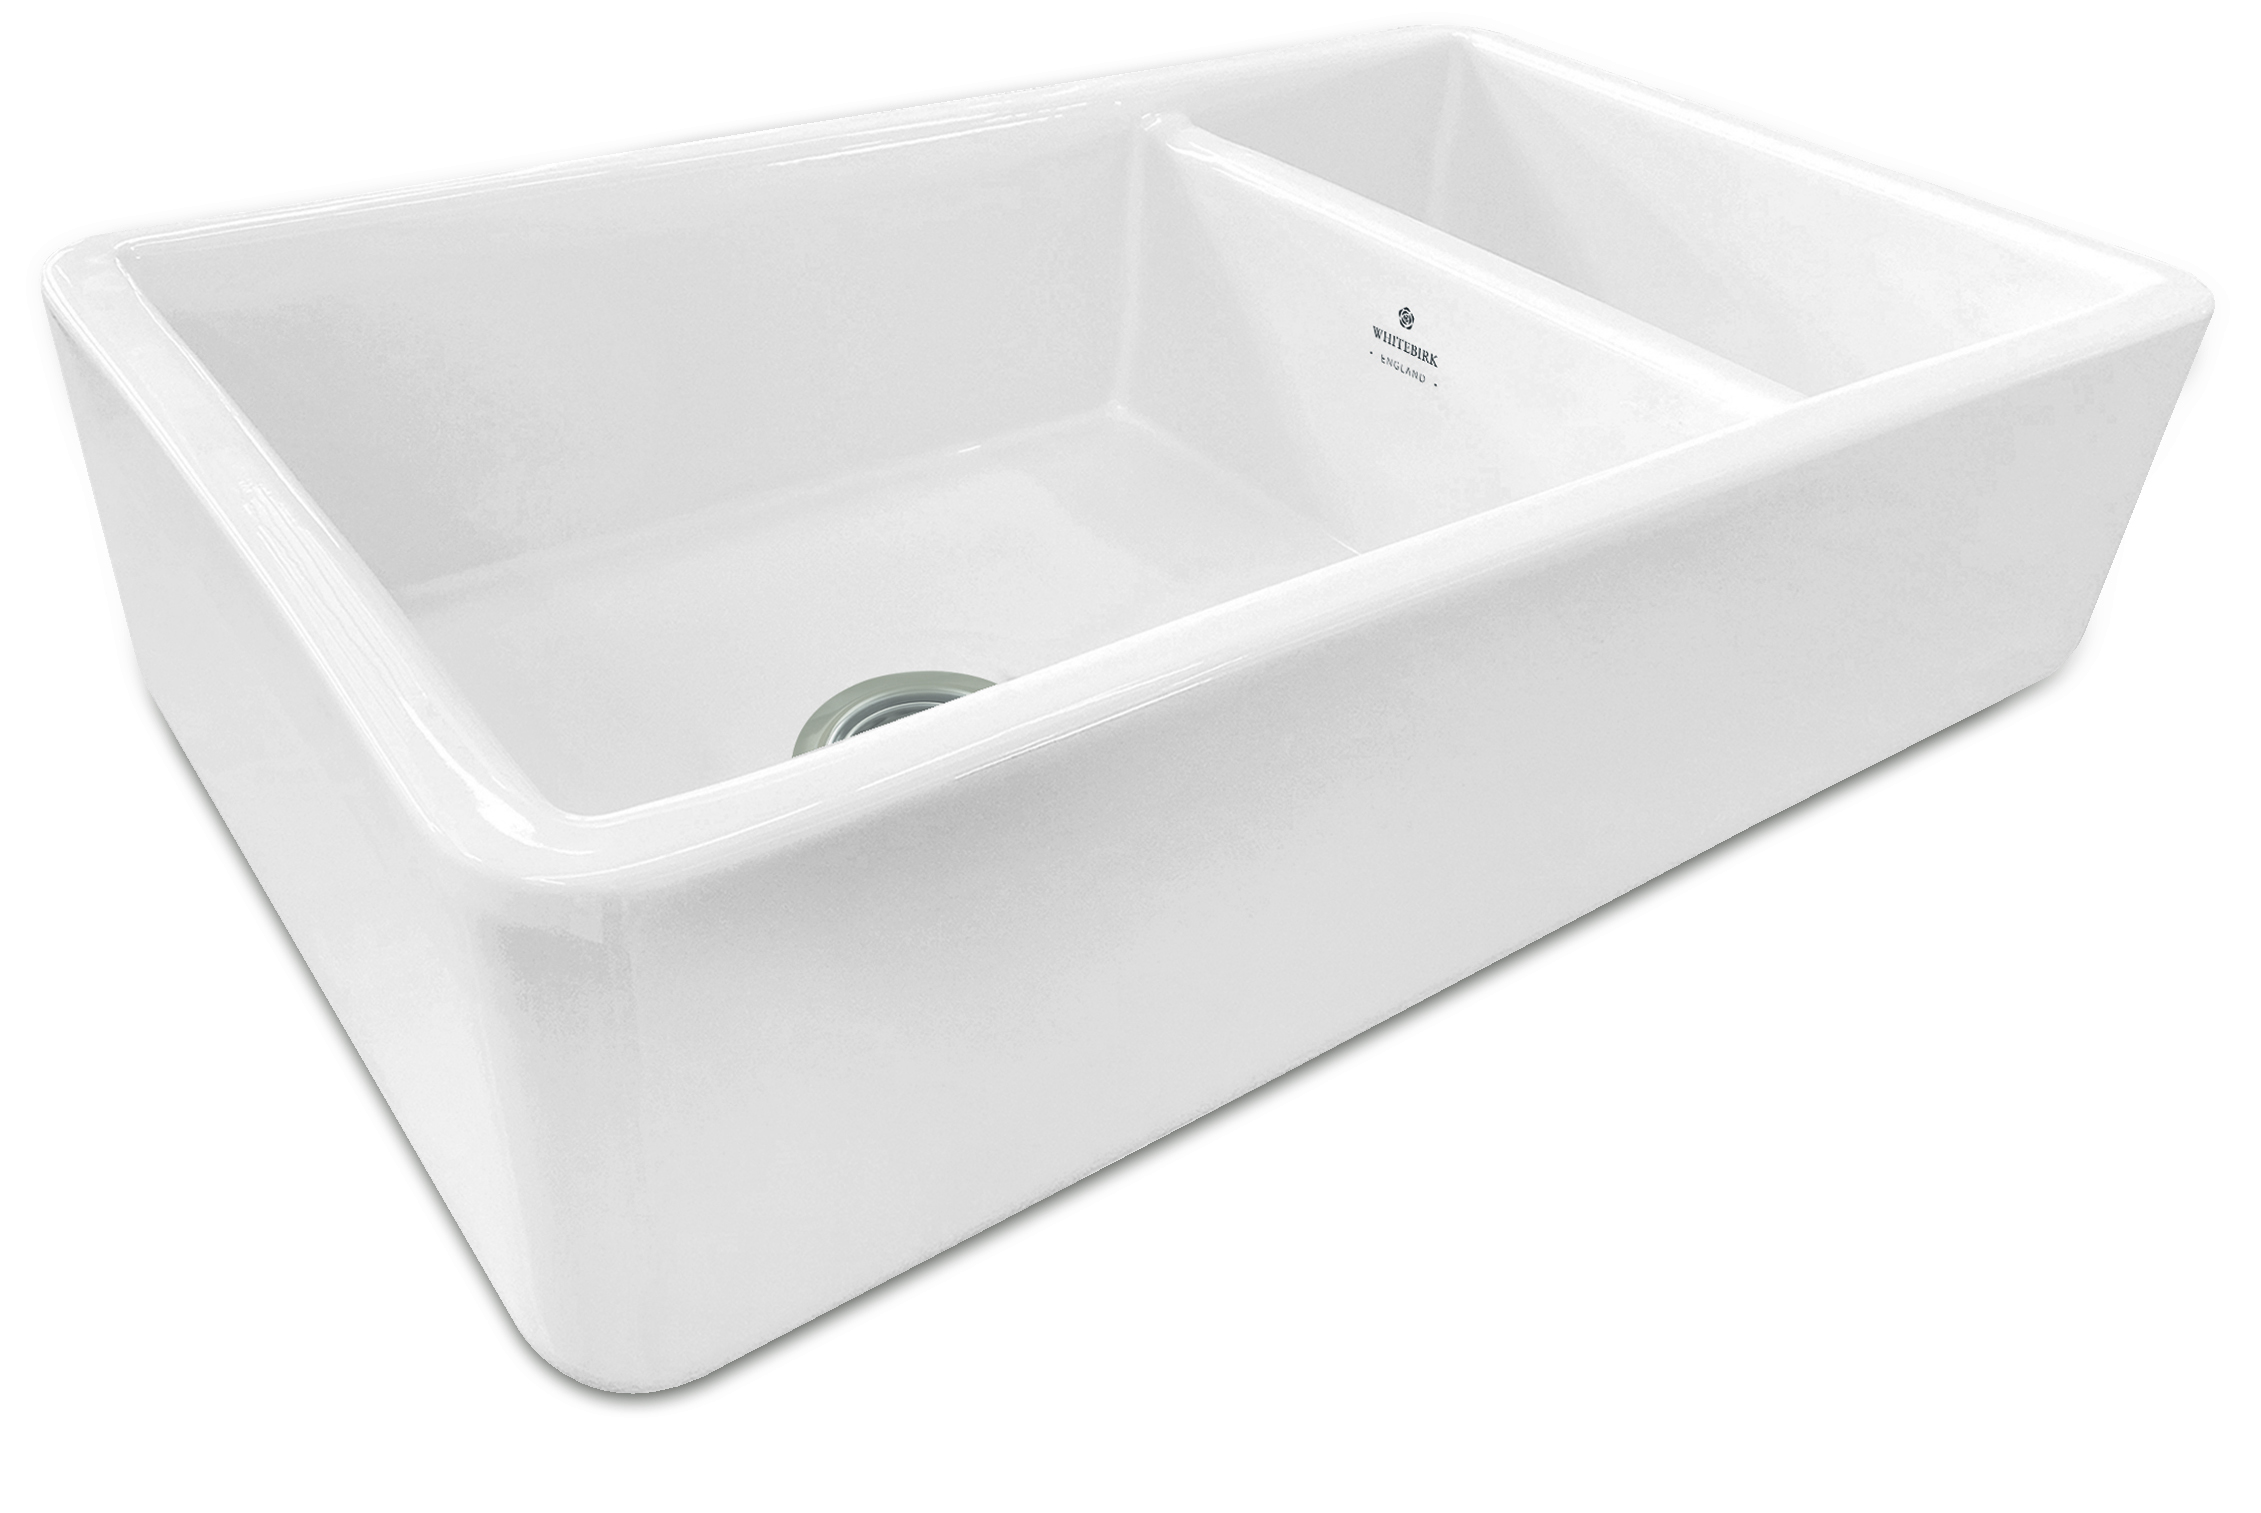 Lansdowne 1.5 Ceramic Sink